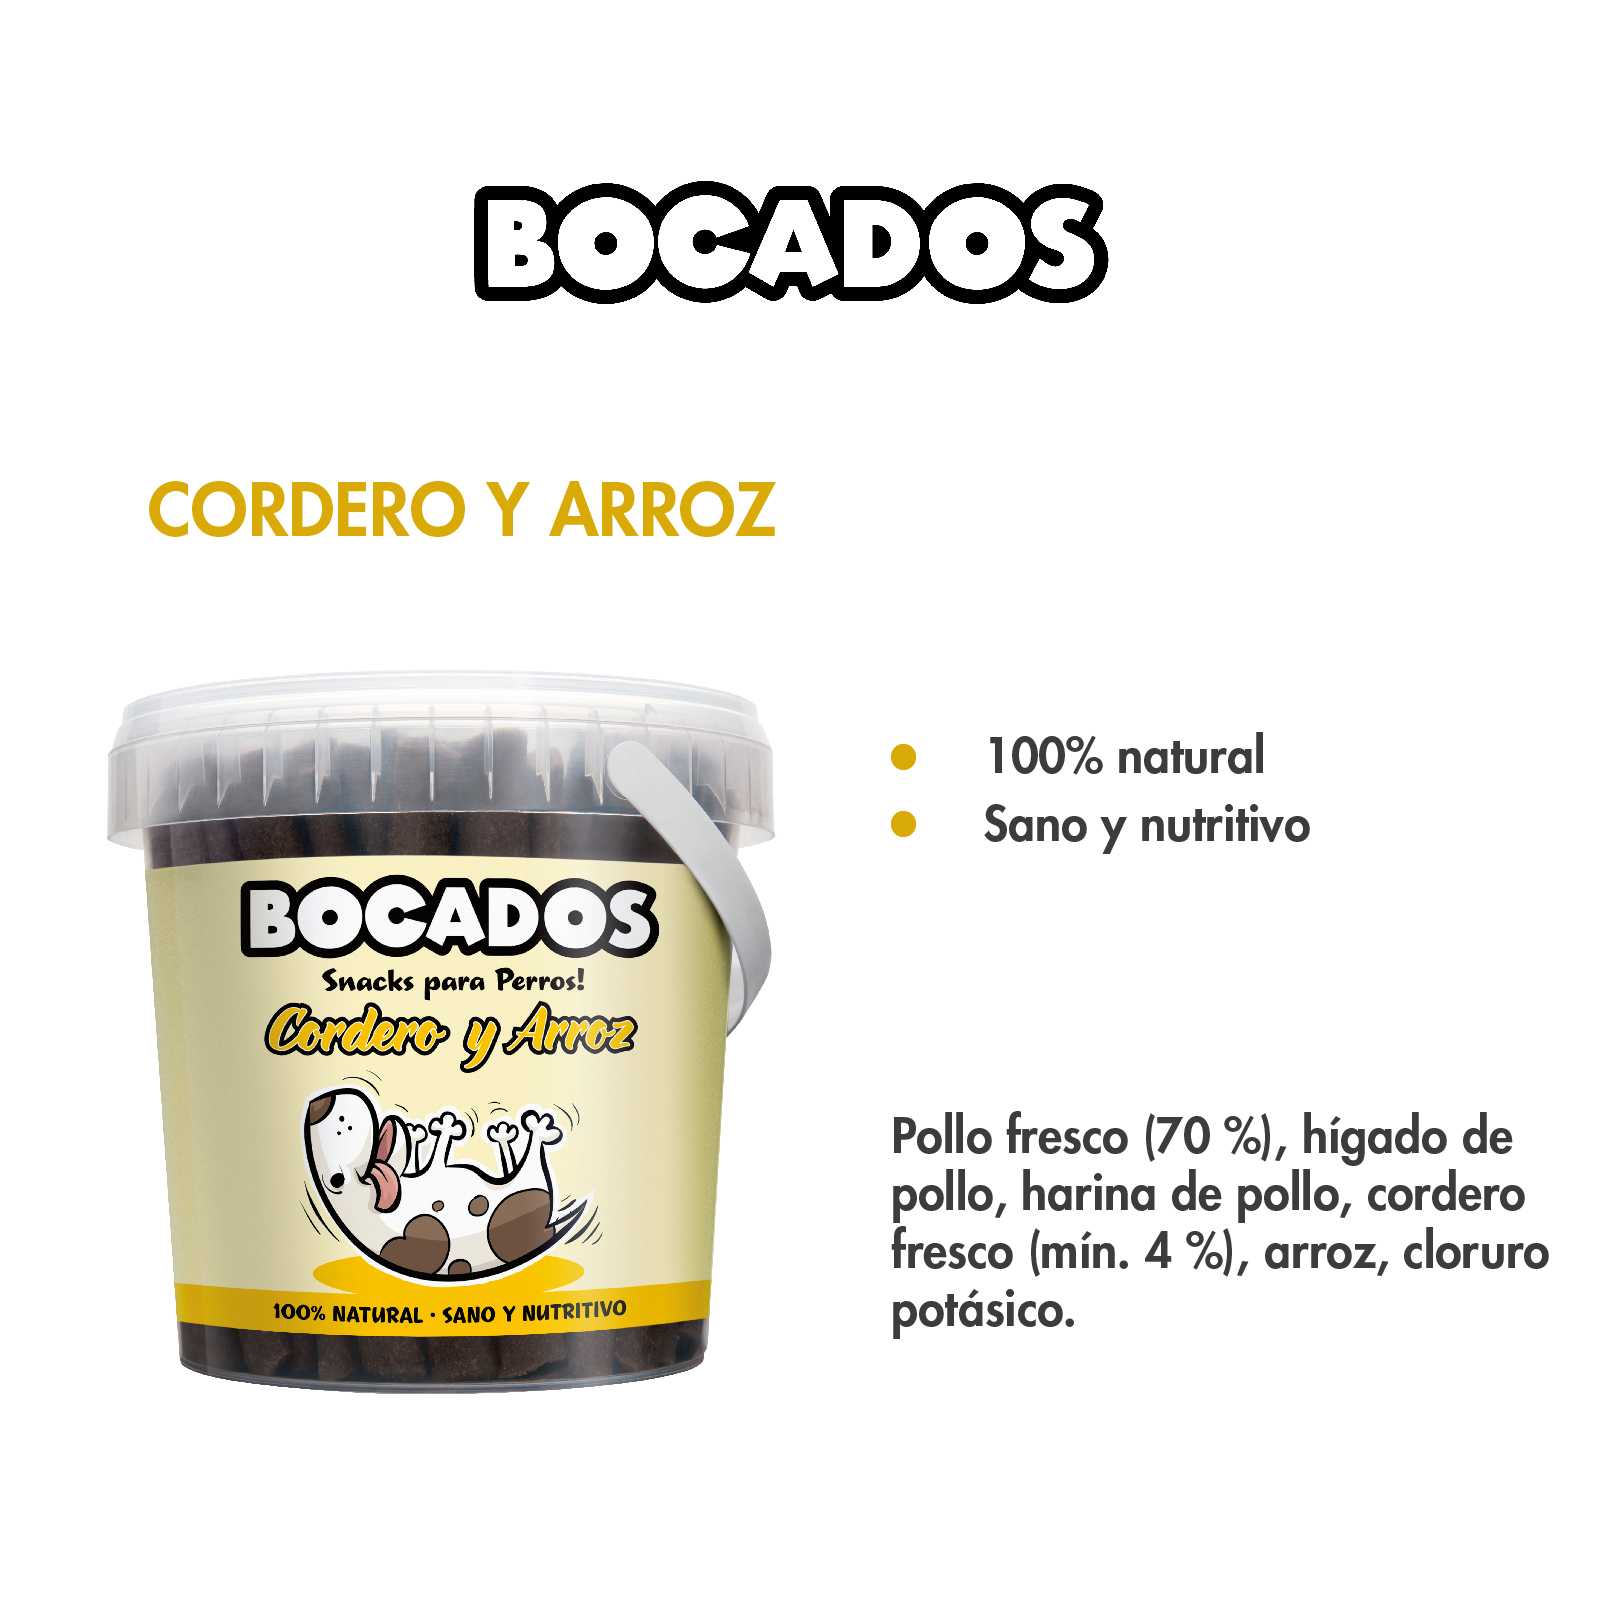 DNG BOCADOS DE CORDERO Y ARROZ